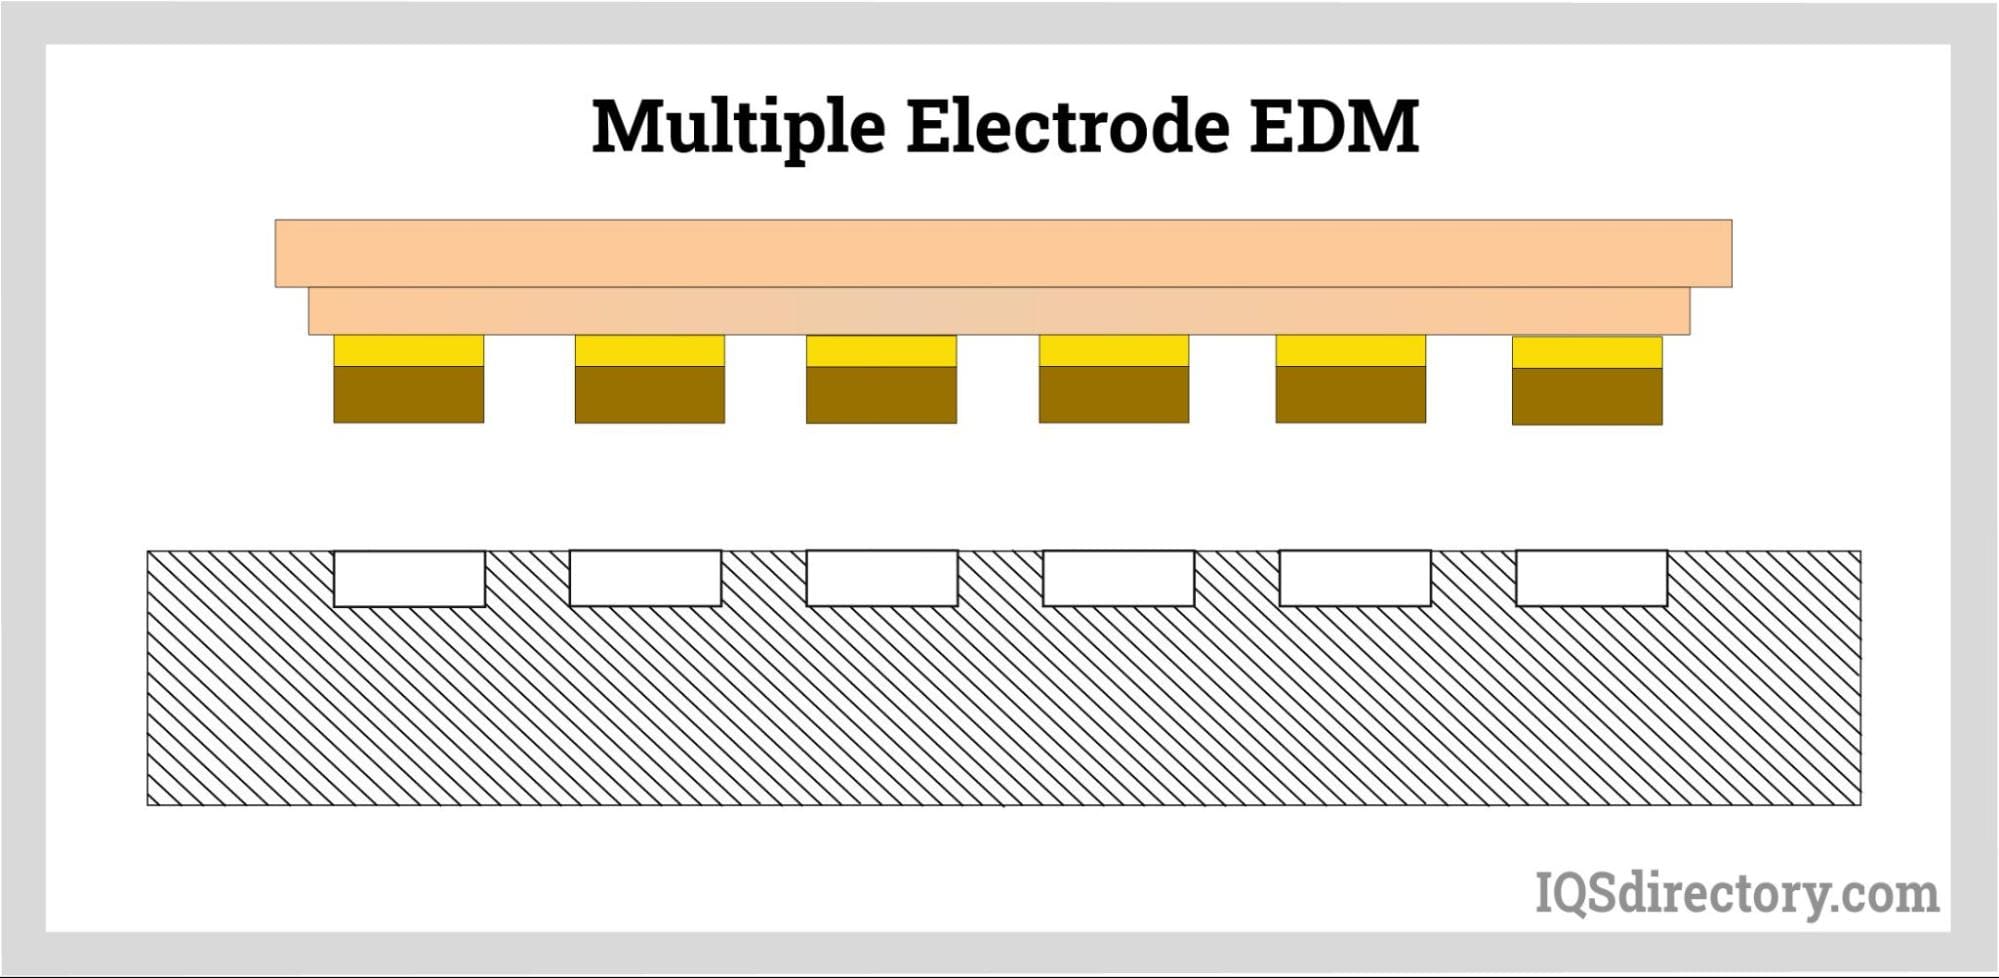 Multiple Electrode EDM